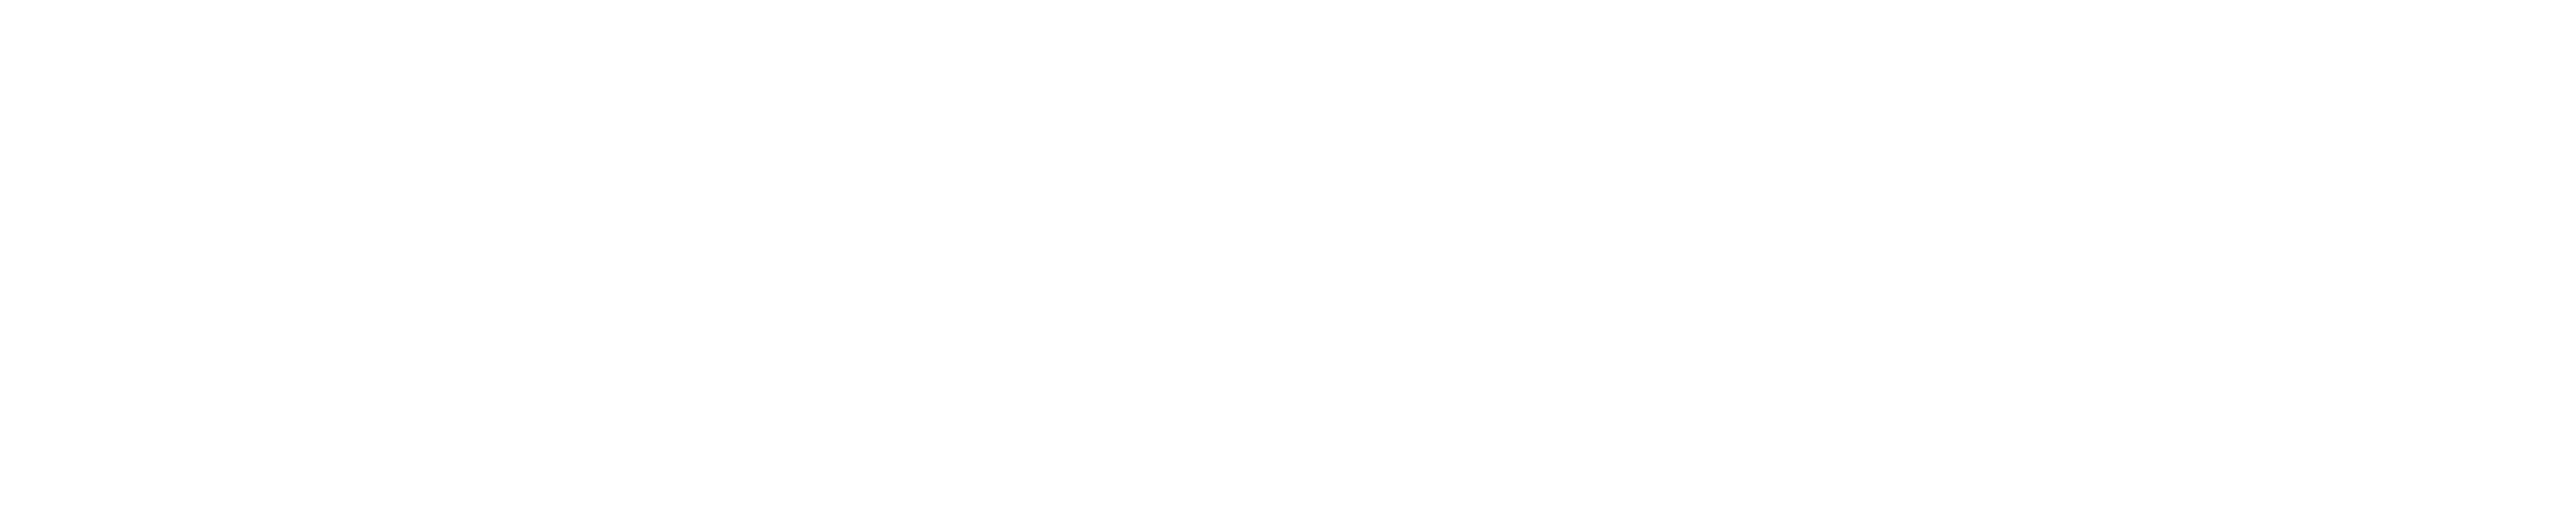 NordDEC Logo - White